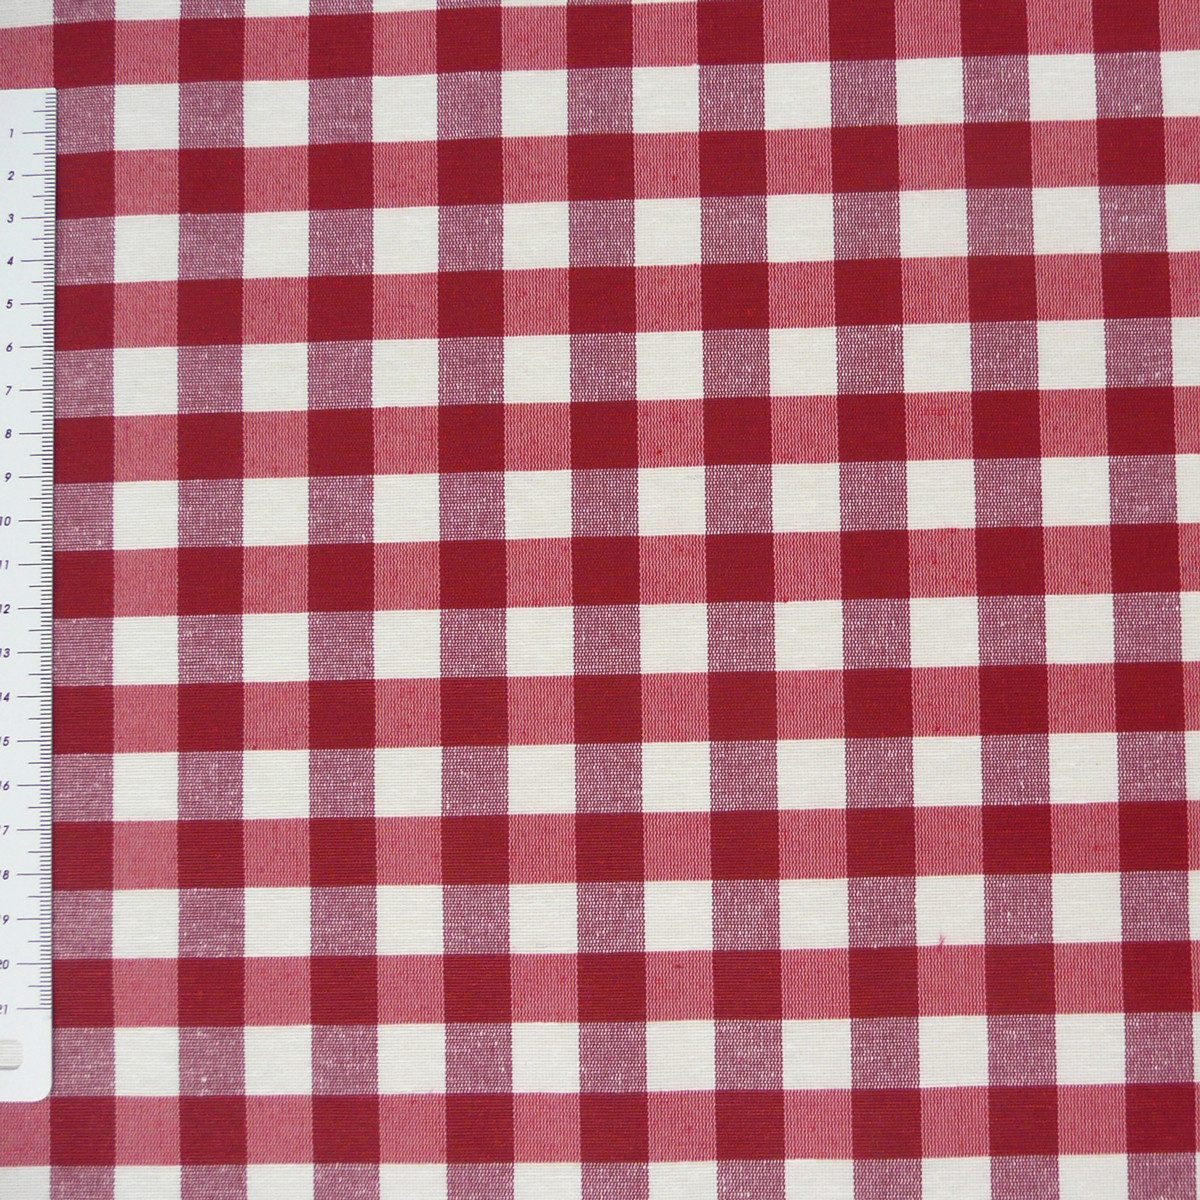 SCHÖNER LEBEN. Stoff Tischdeckenstoff Dekostoff Acrylbeschichtung Karos rot weiß 140cm, abwaschbar